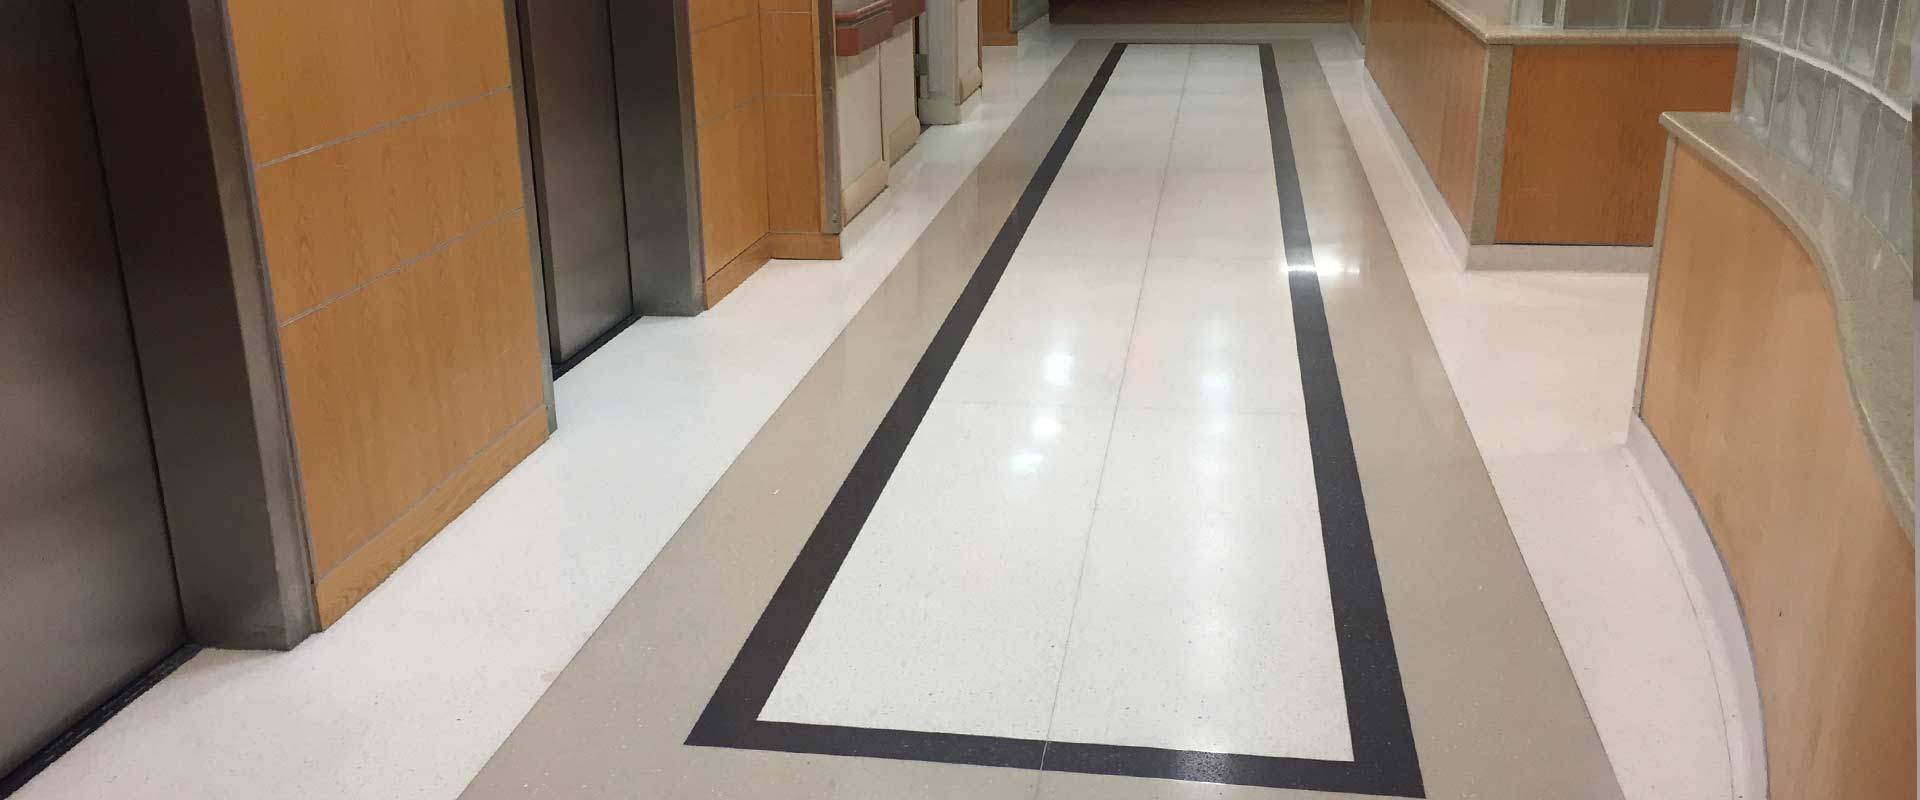 Medical Facility & Hospital Flooring Installation